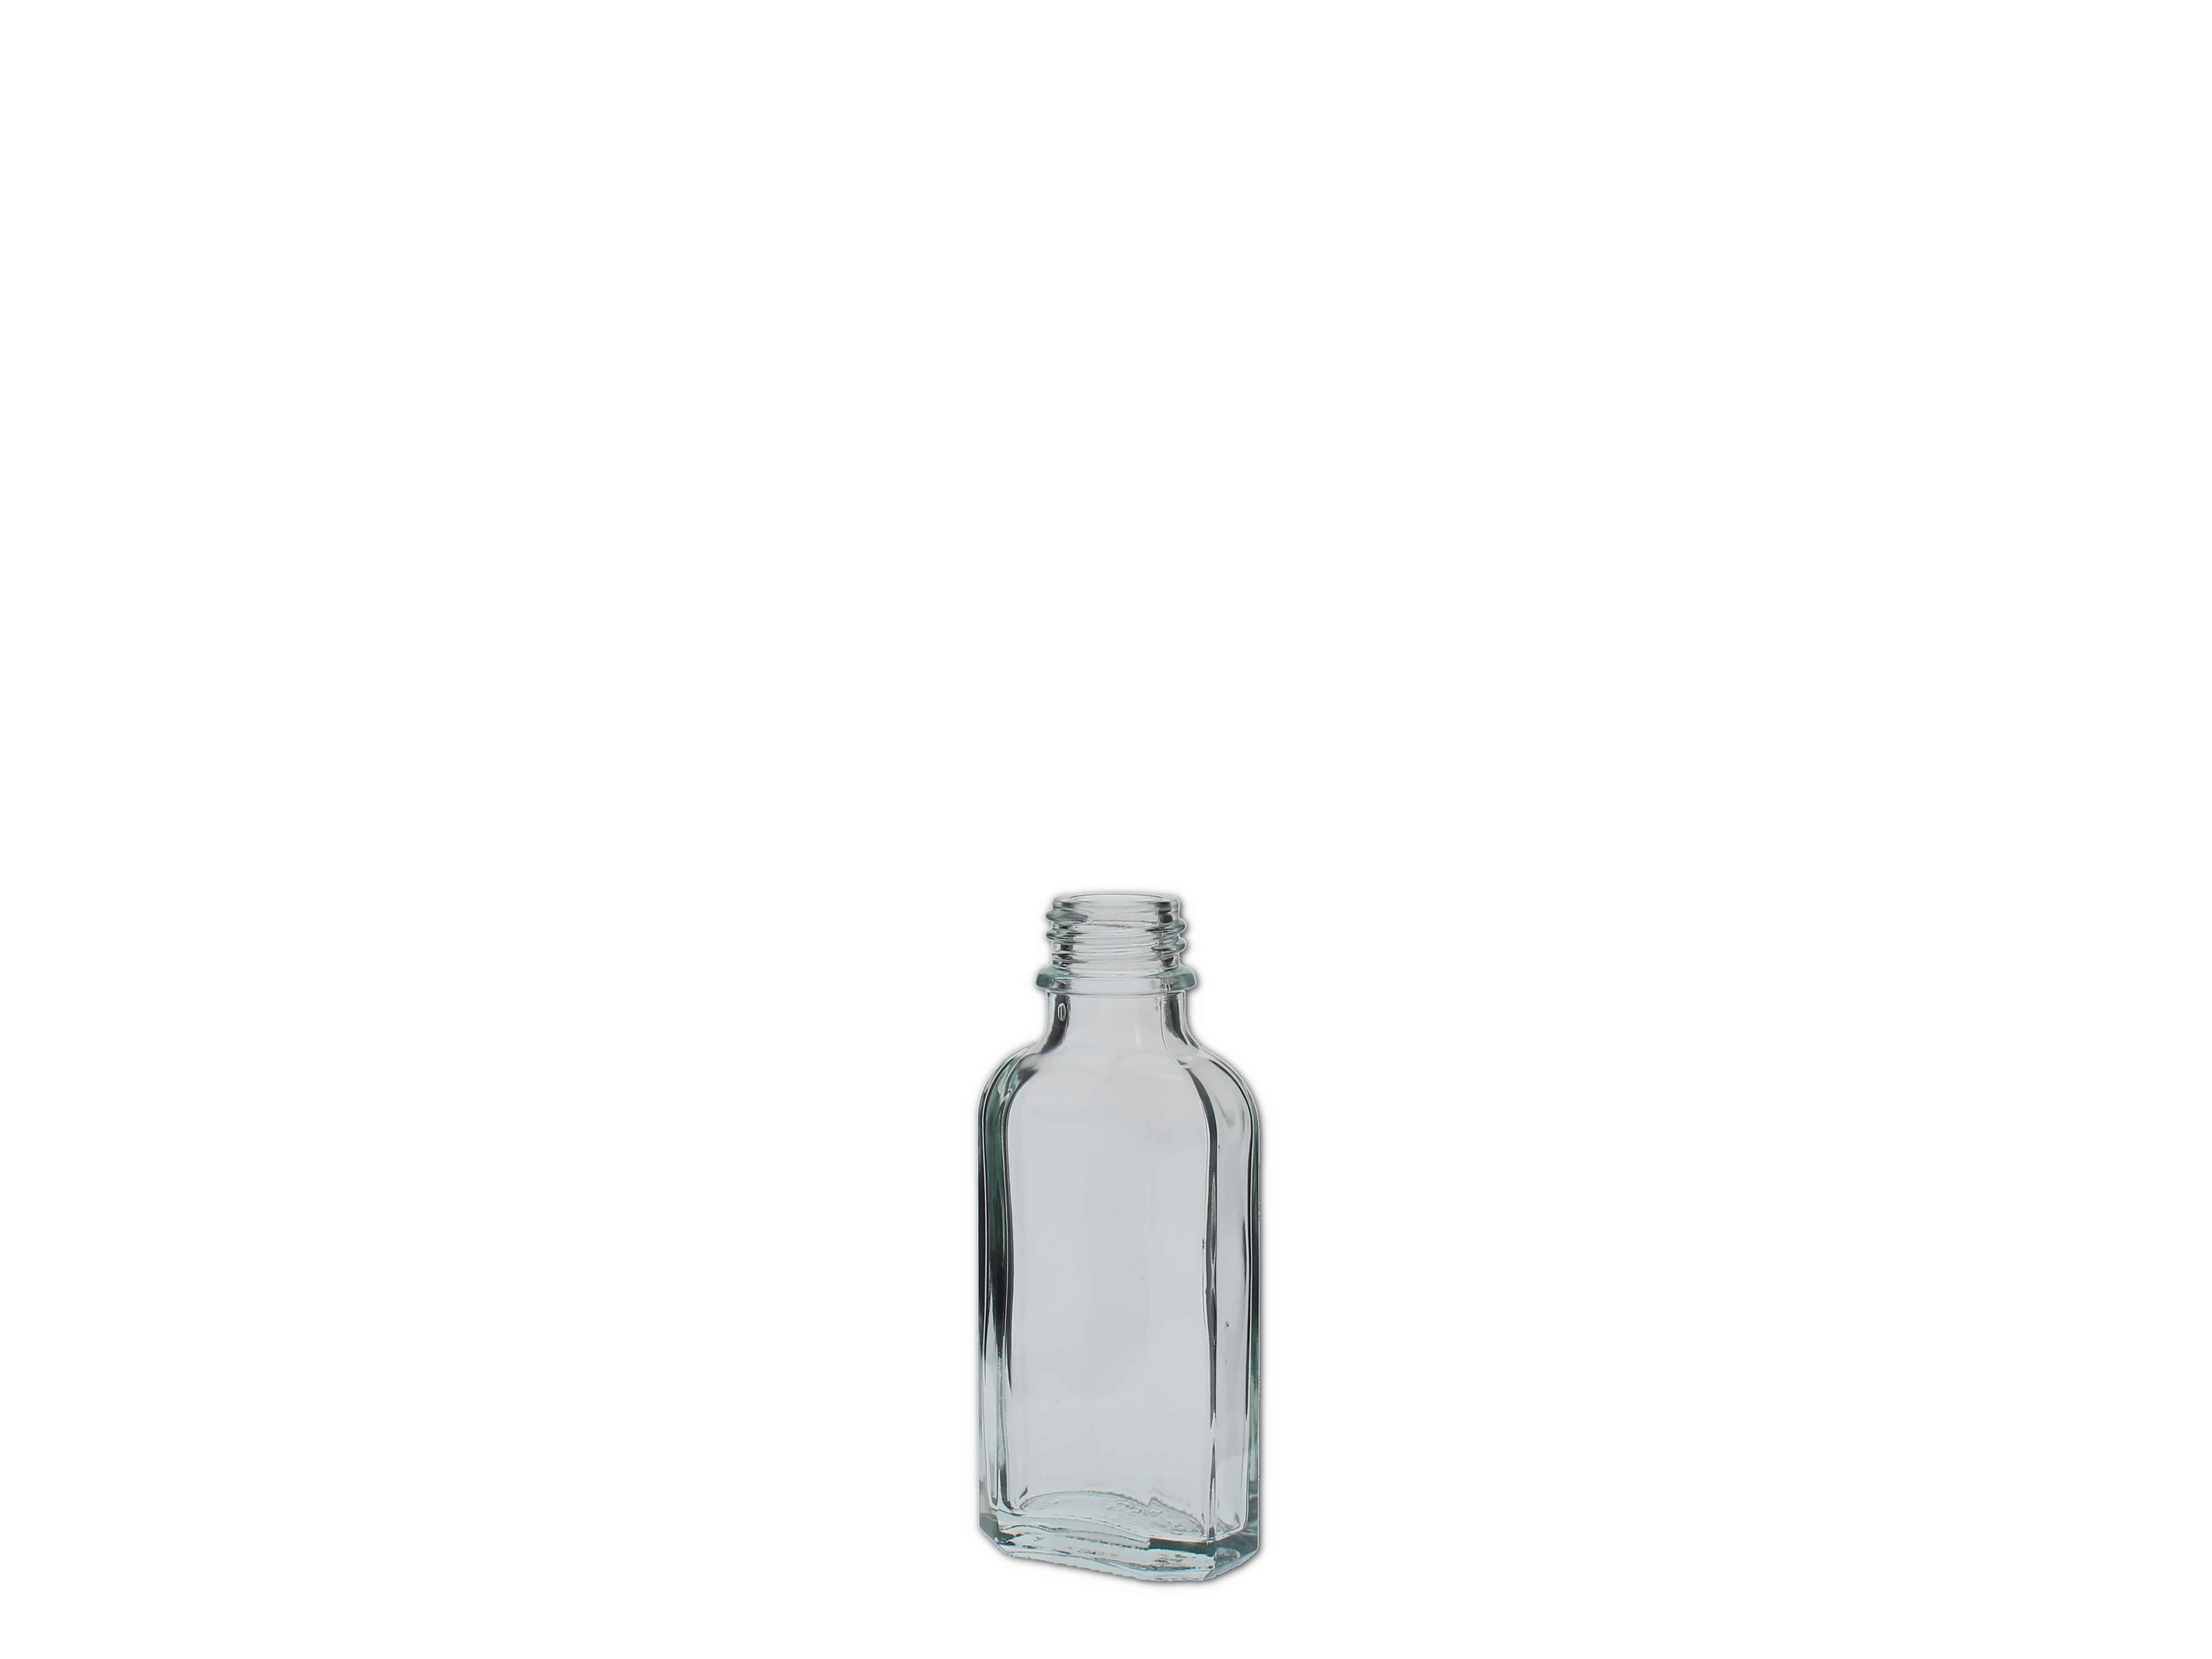    Meplatflasche weiß - DIN22 - 50ml